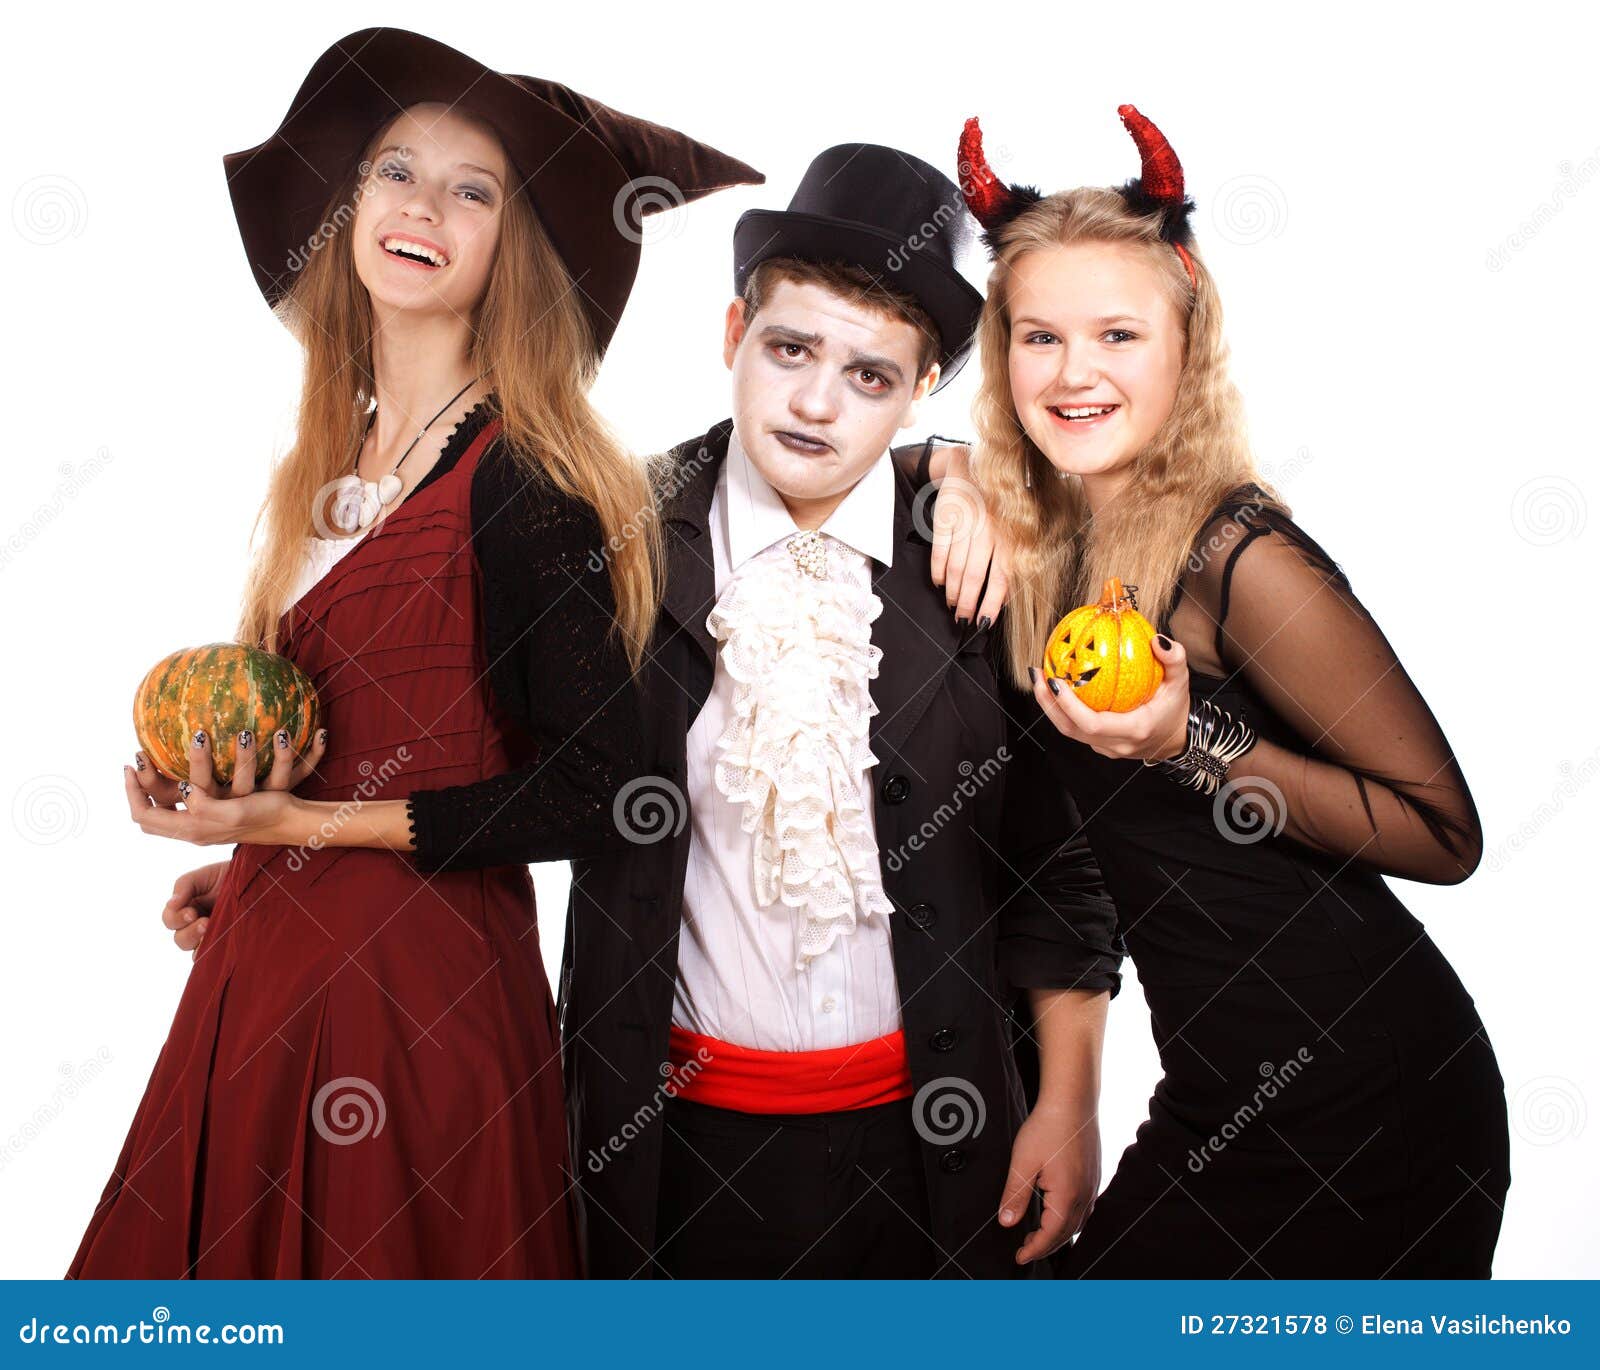 Bruxa bonita de Halloween imagem de stock. Imagem de mistério - 75787617